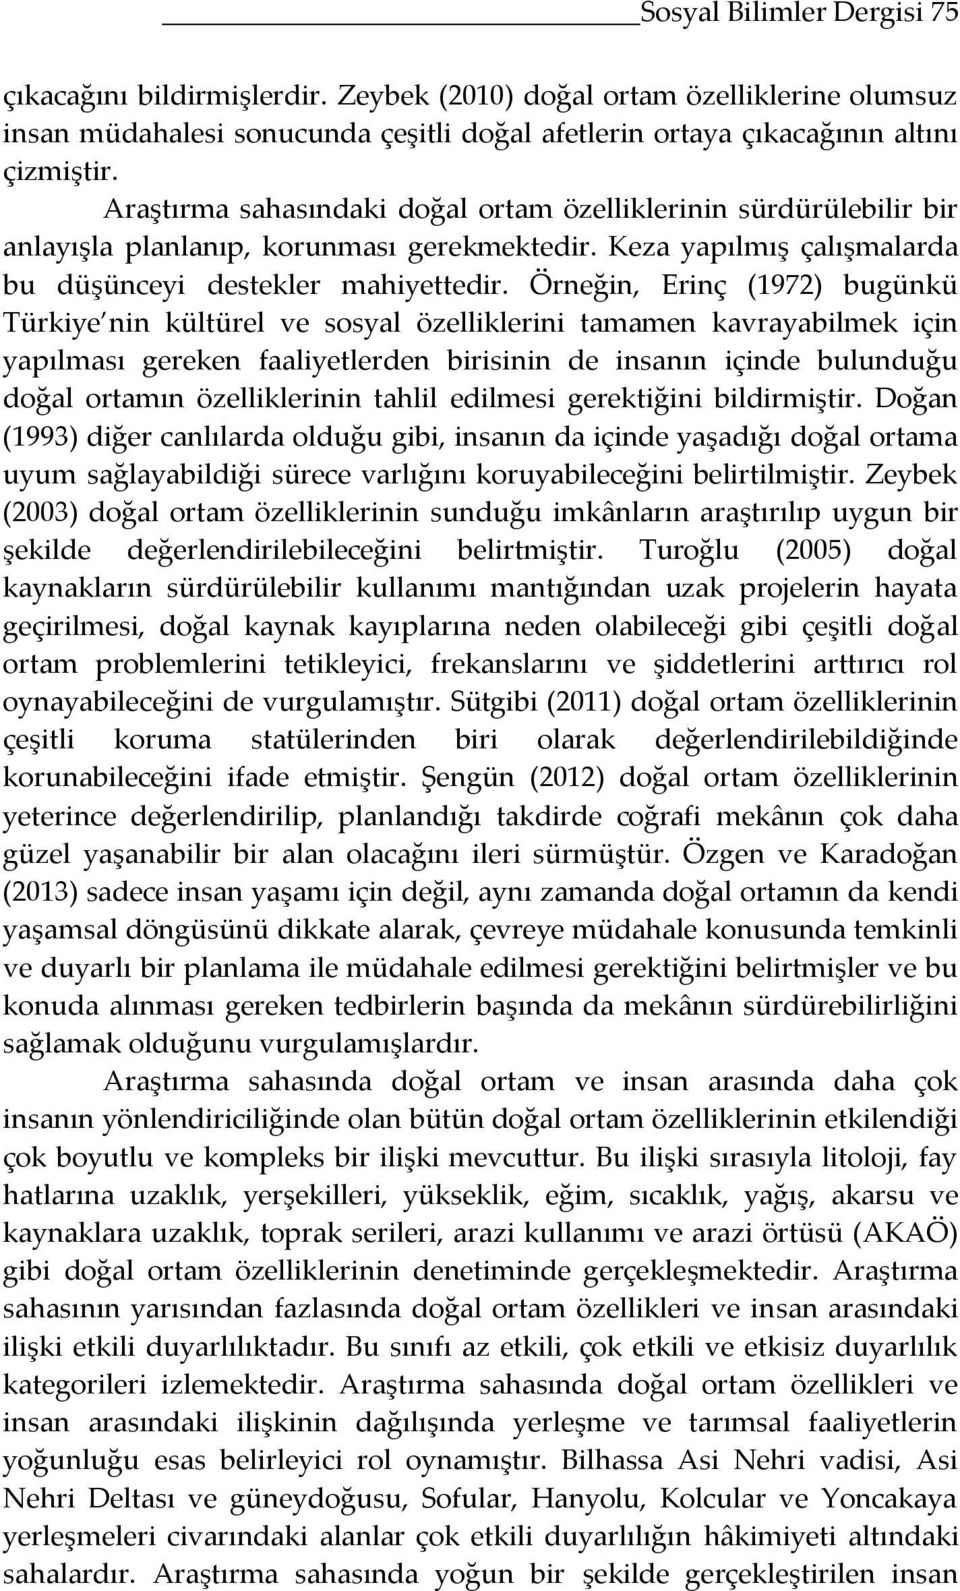 Örneğin, Erinç (1972) bugünkü Türkiye nin kültürel ve sosyal özelliklerini tamamen kavrayabilmek için yapılması gereken faaliyetlerden birisinin de insanın içinde bulunduğu doğal ortamın